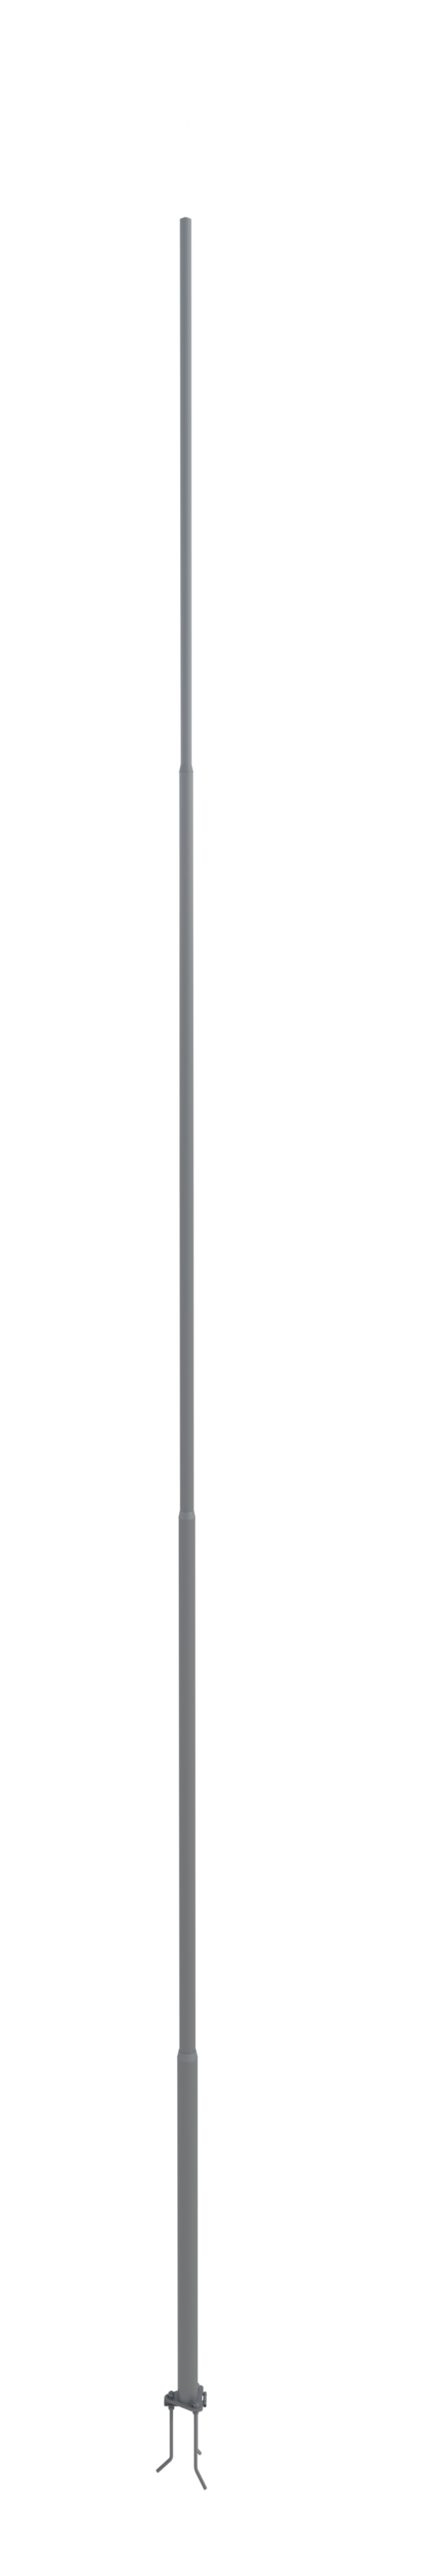 NordWerk МСАА-21 — Молниеотвод высотой 21 метр для активных молниеприемников (алюминий)